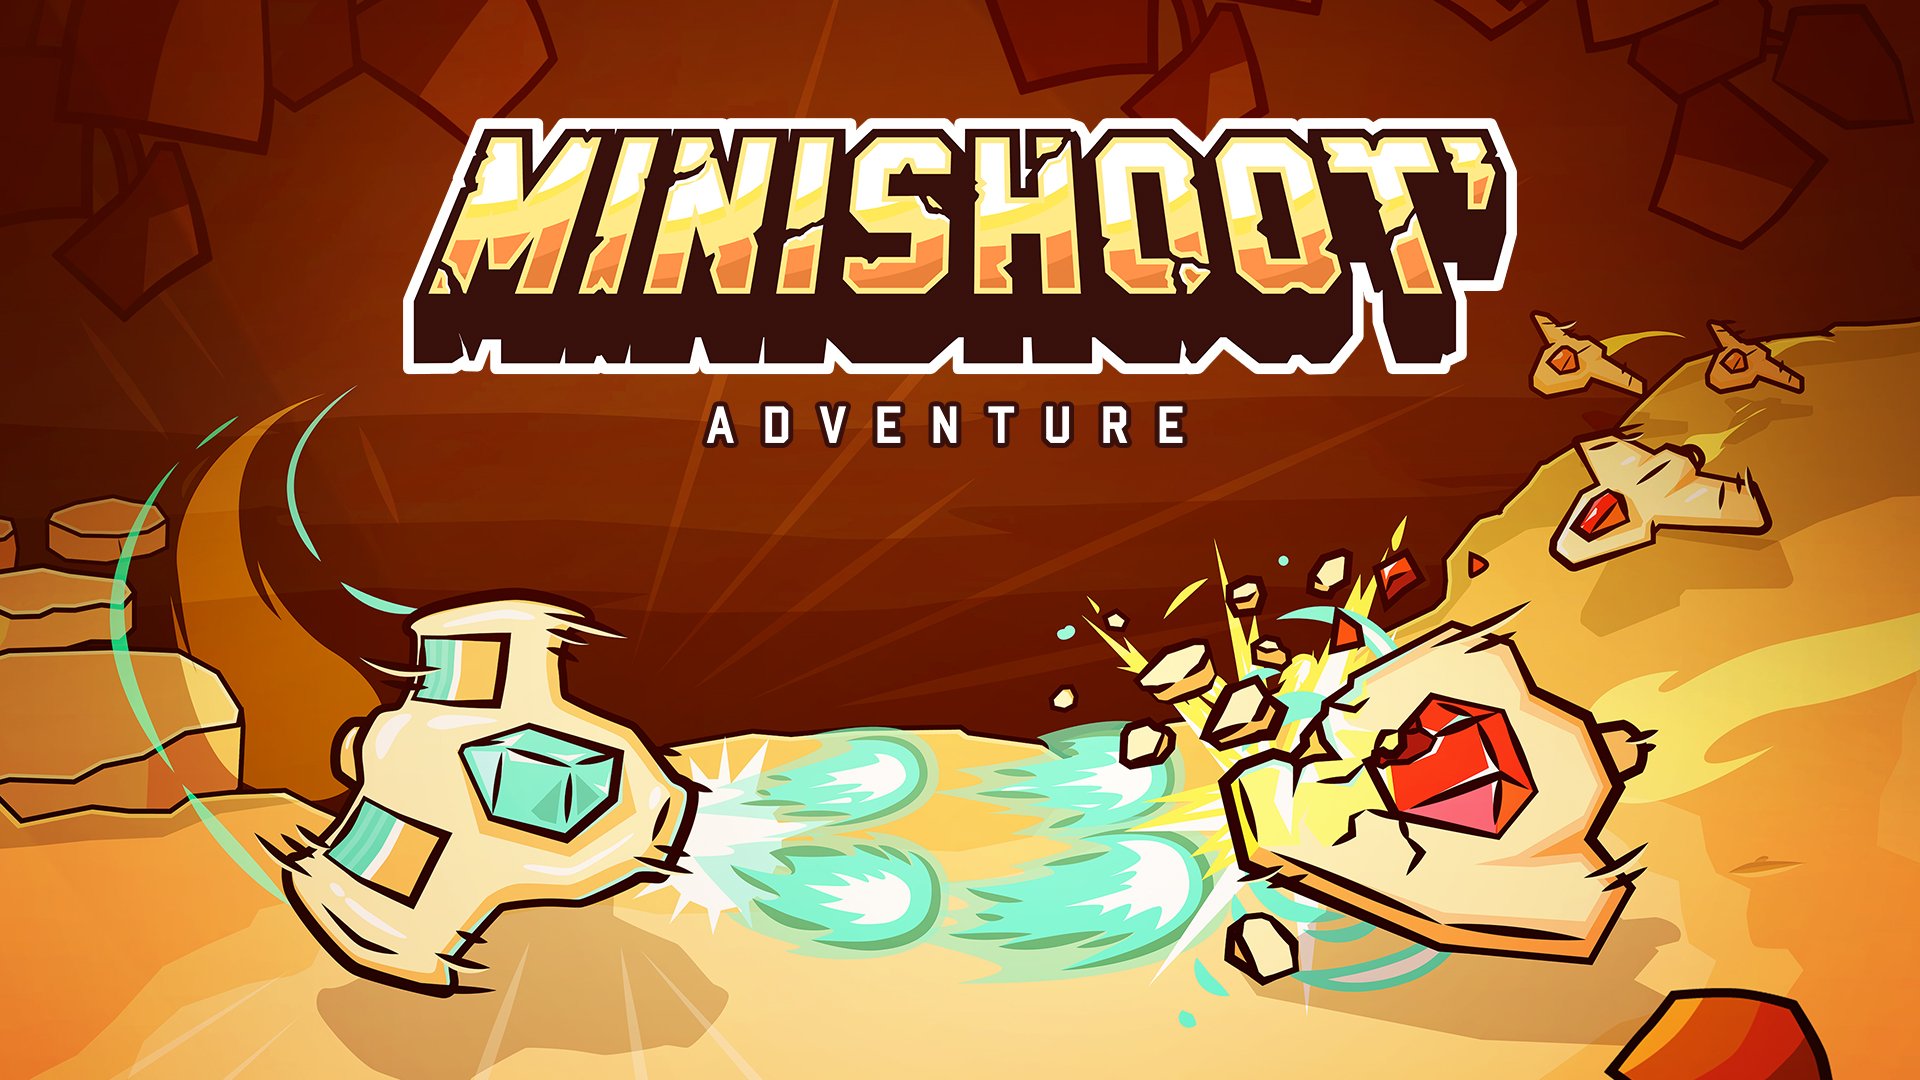 Minishoot' Adventure